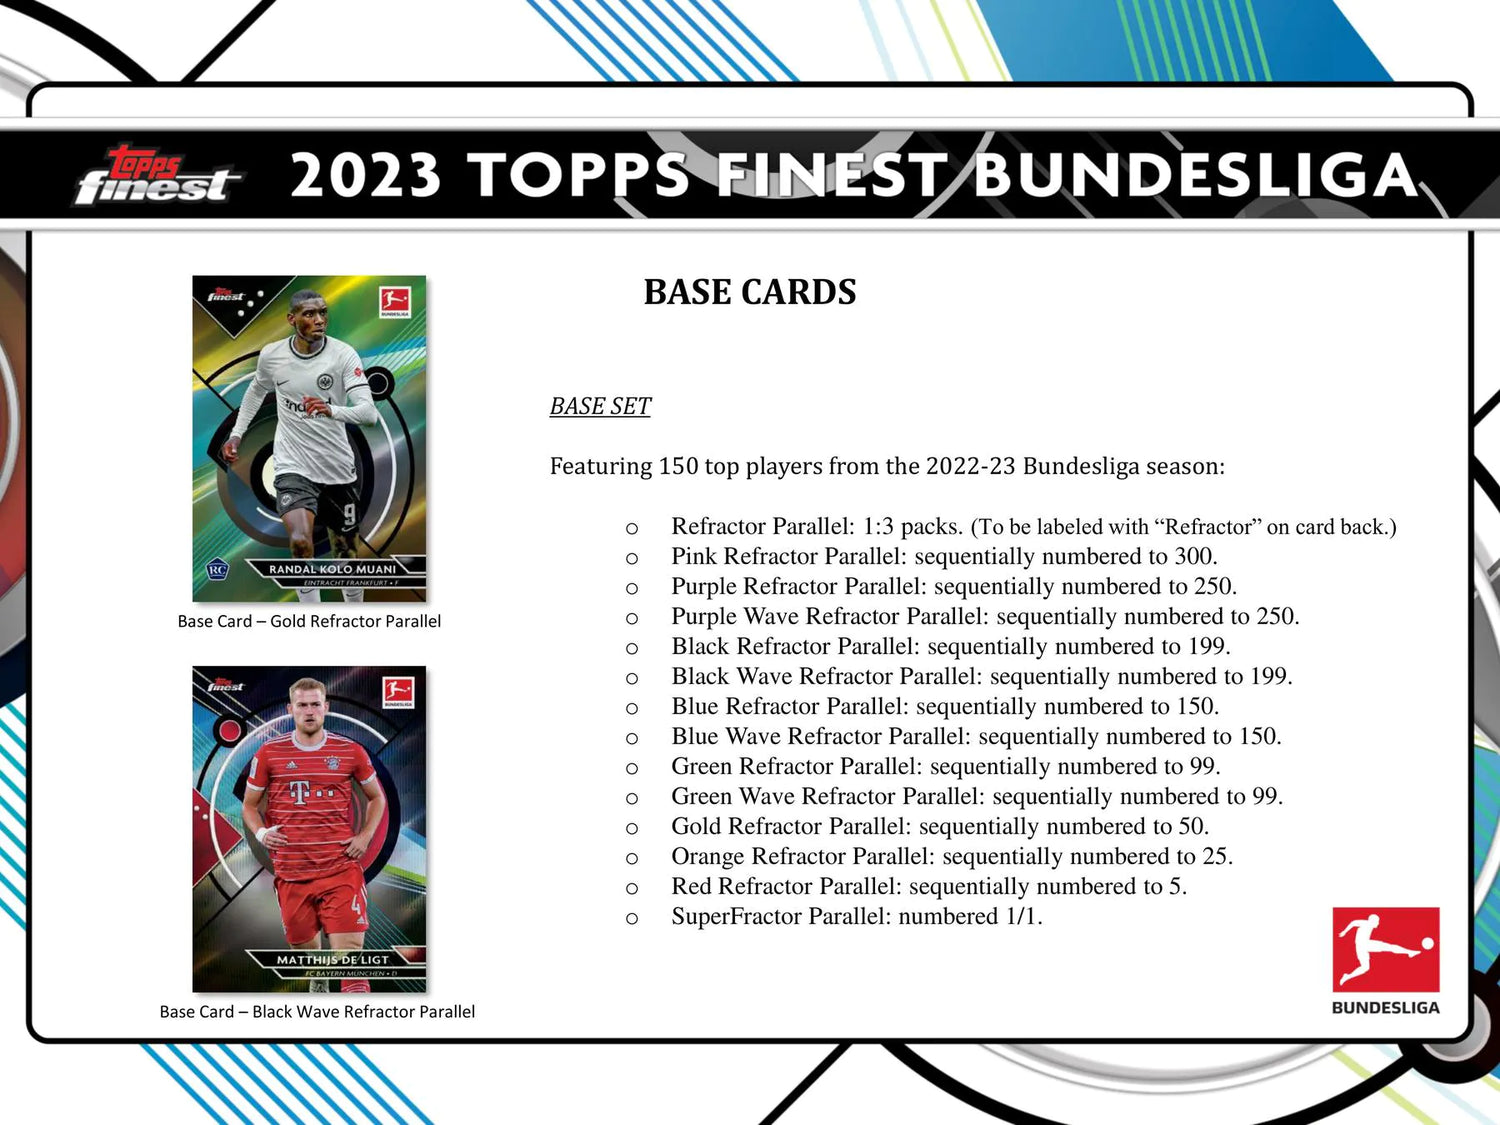  2022-23 Topps Chrome Bundesliga Soccer Hobby Box